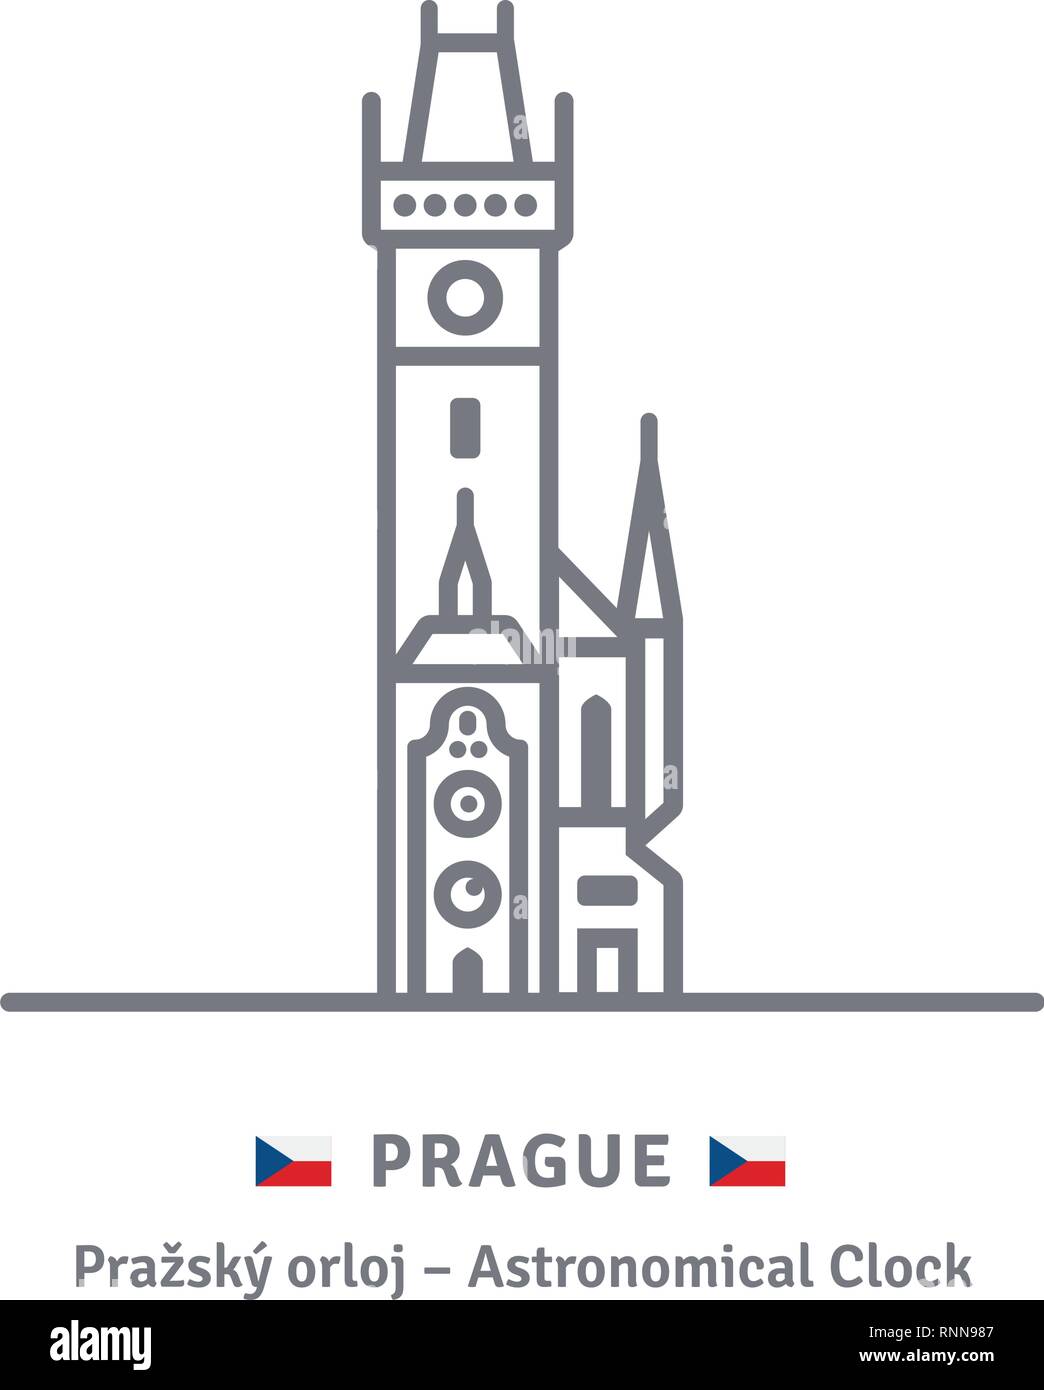 Tschechien referenzmarkenlinie Symbol. Astronomische Uhr am alten Rathaus und tschechische Flagge Vector Illustration. Stock Vektor